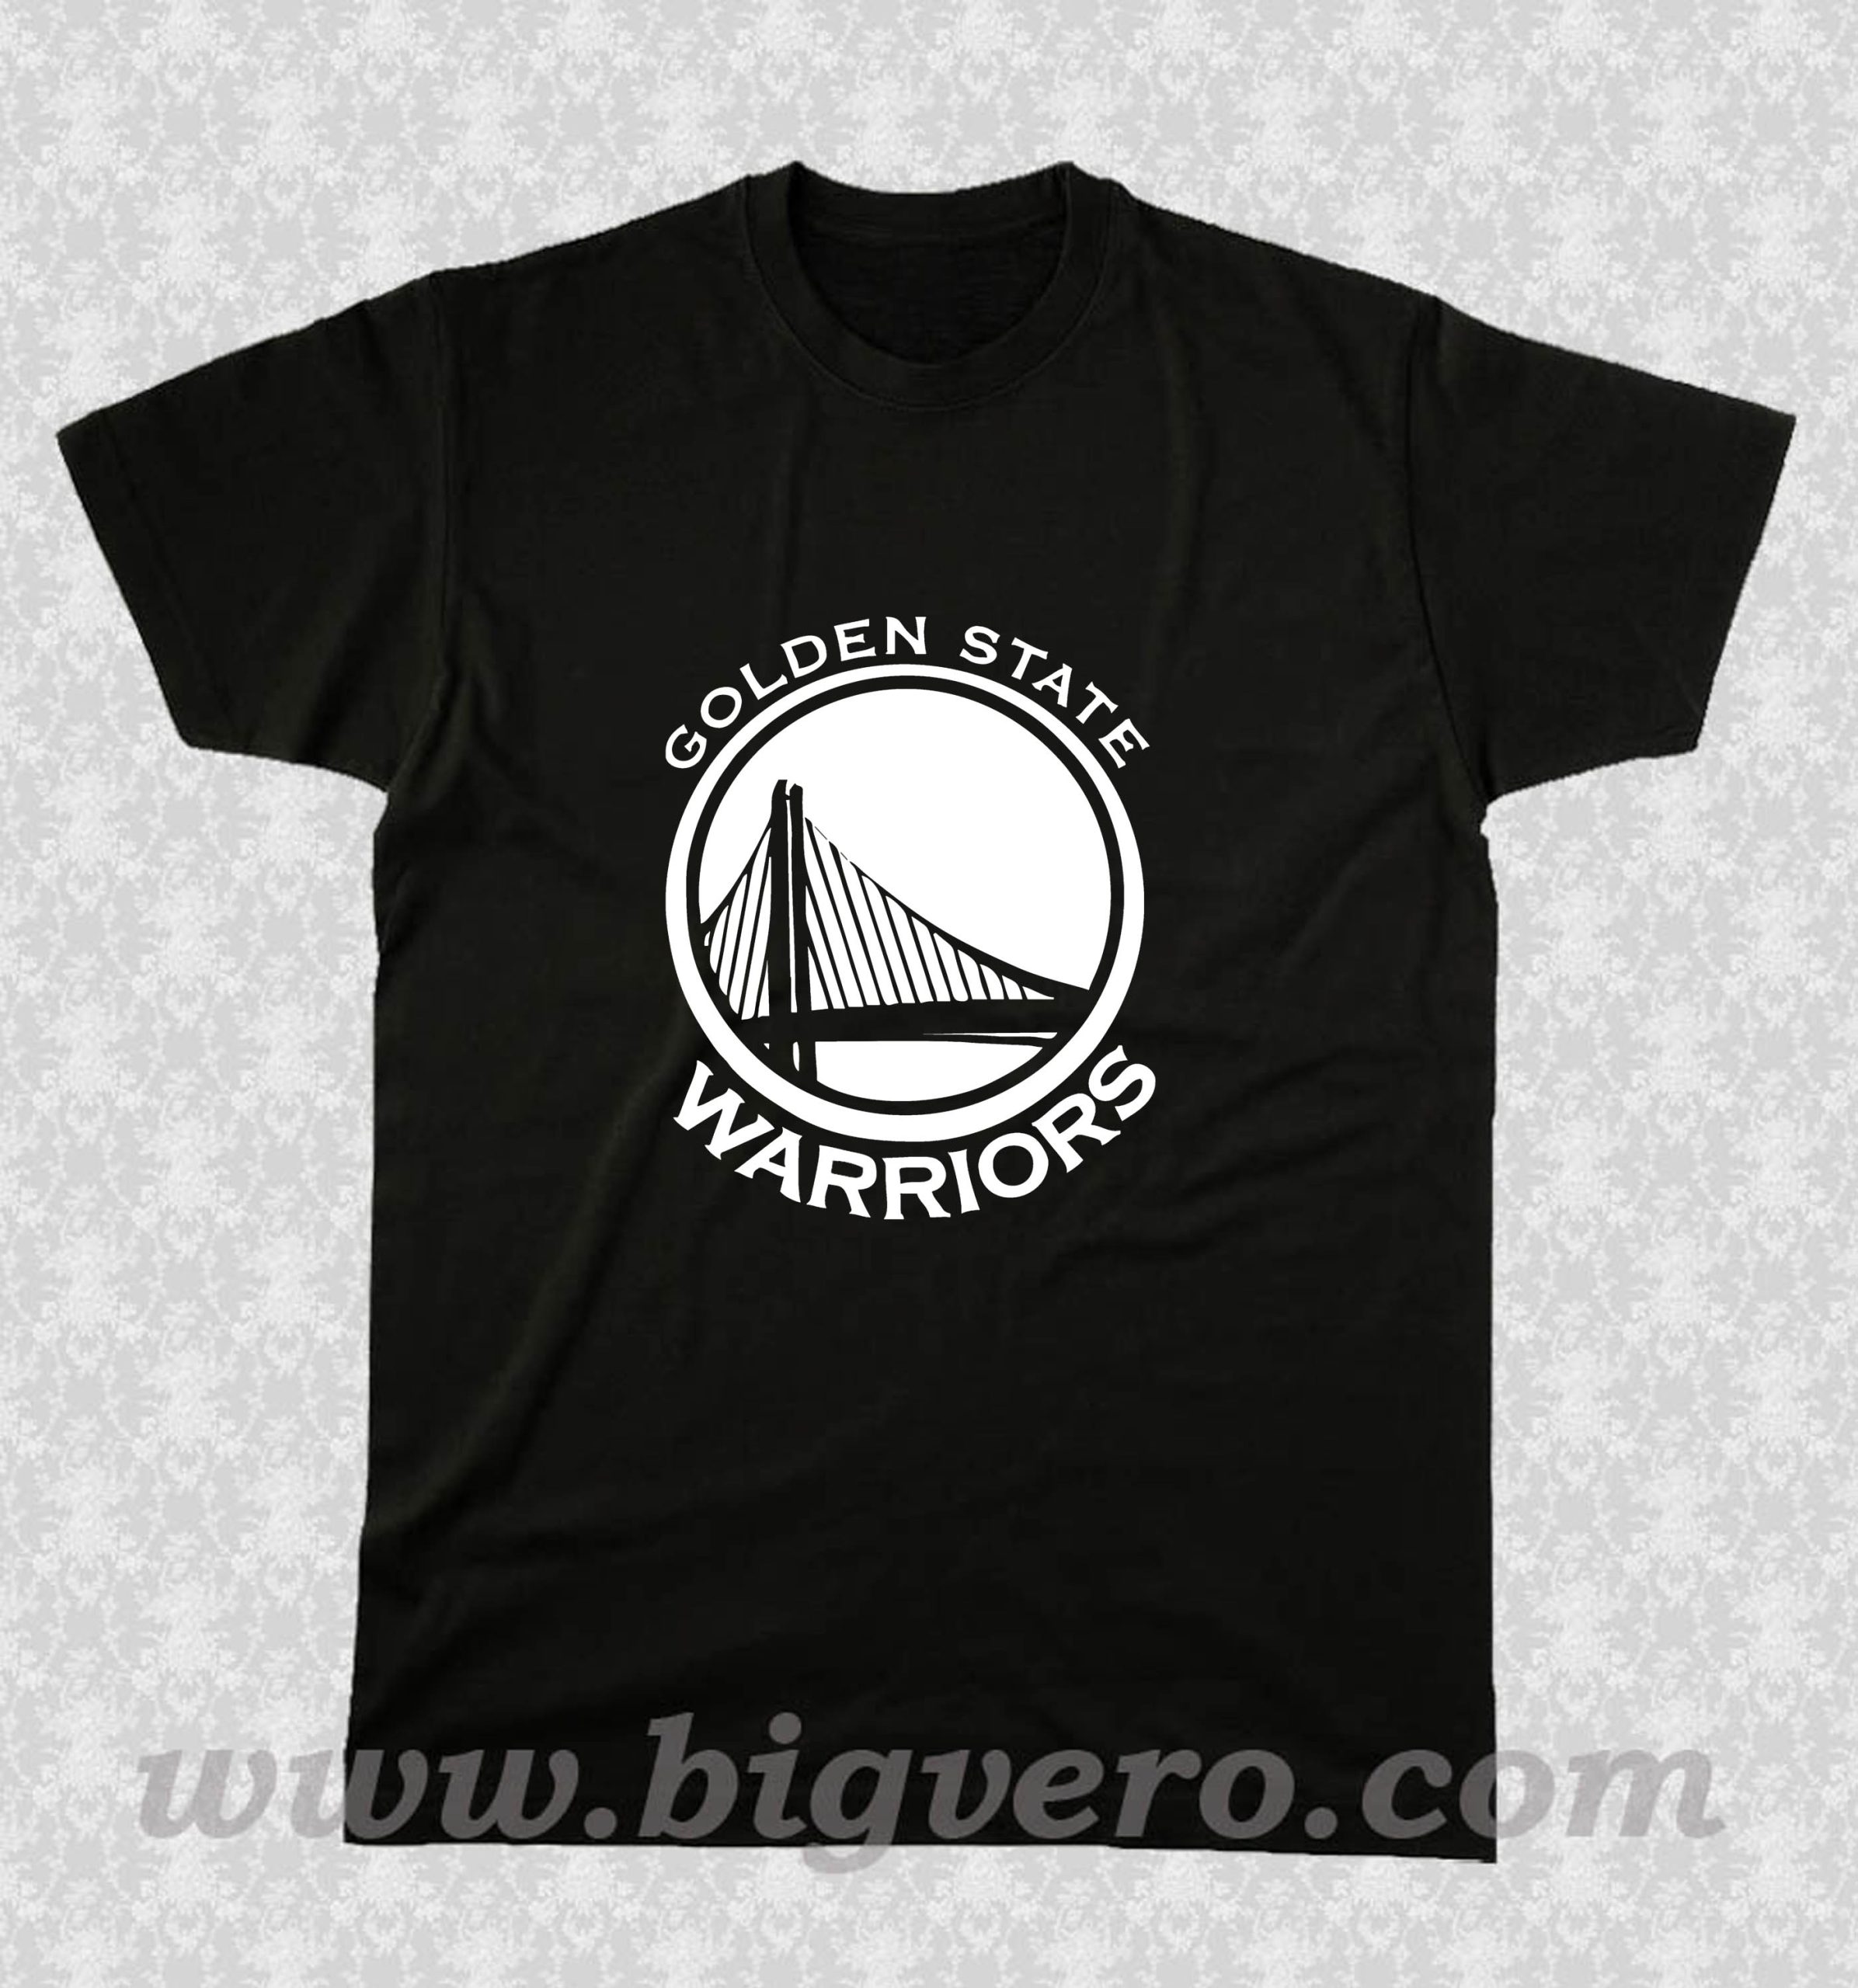 warriors shirt black